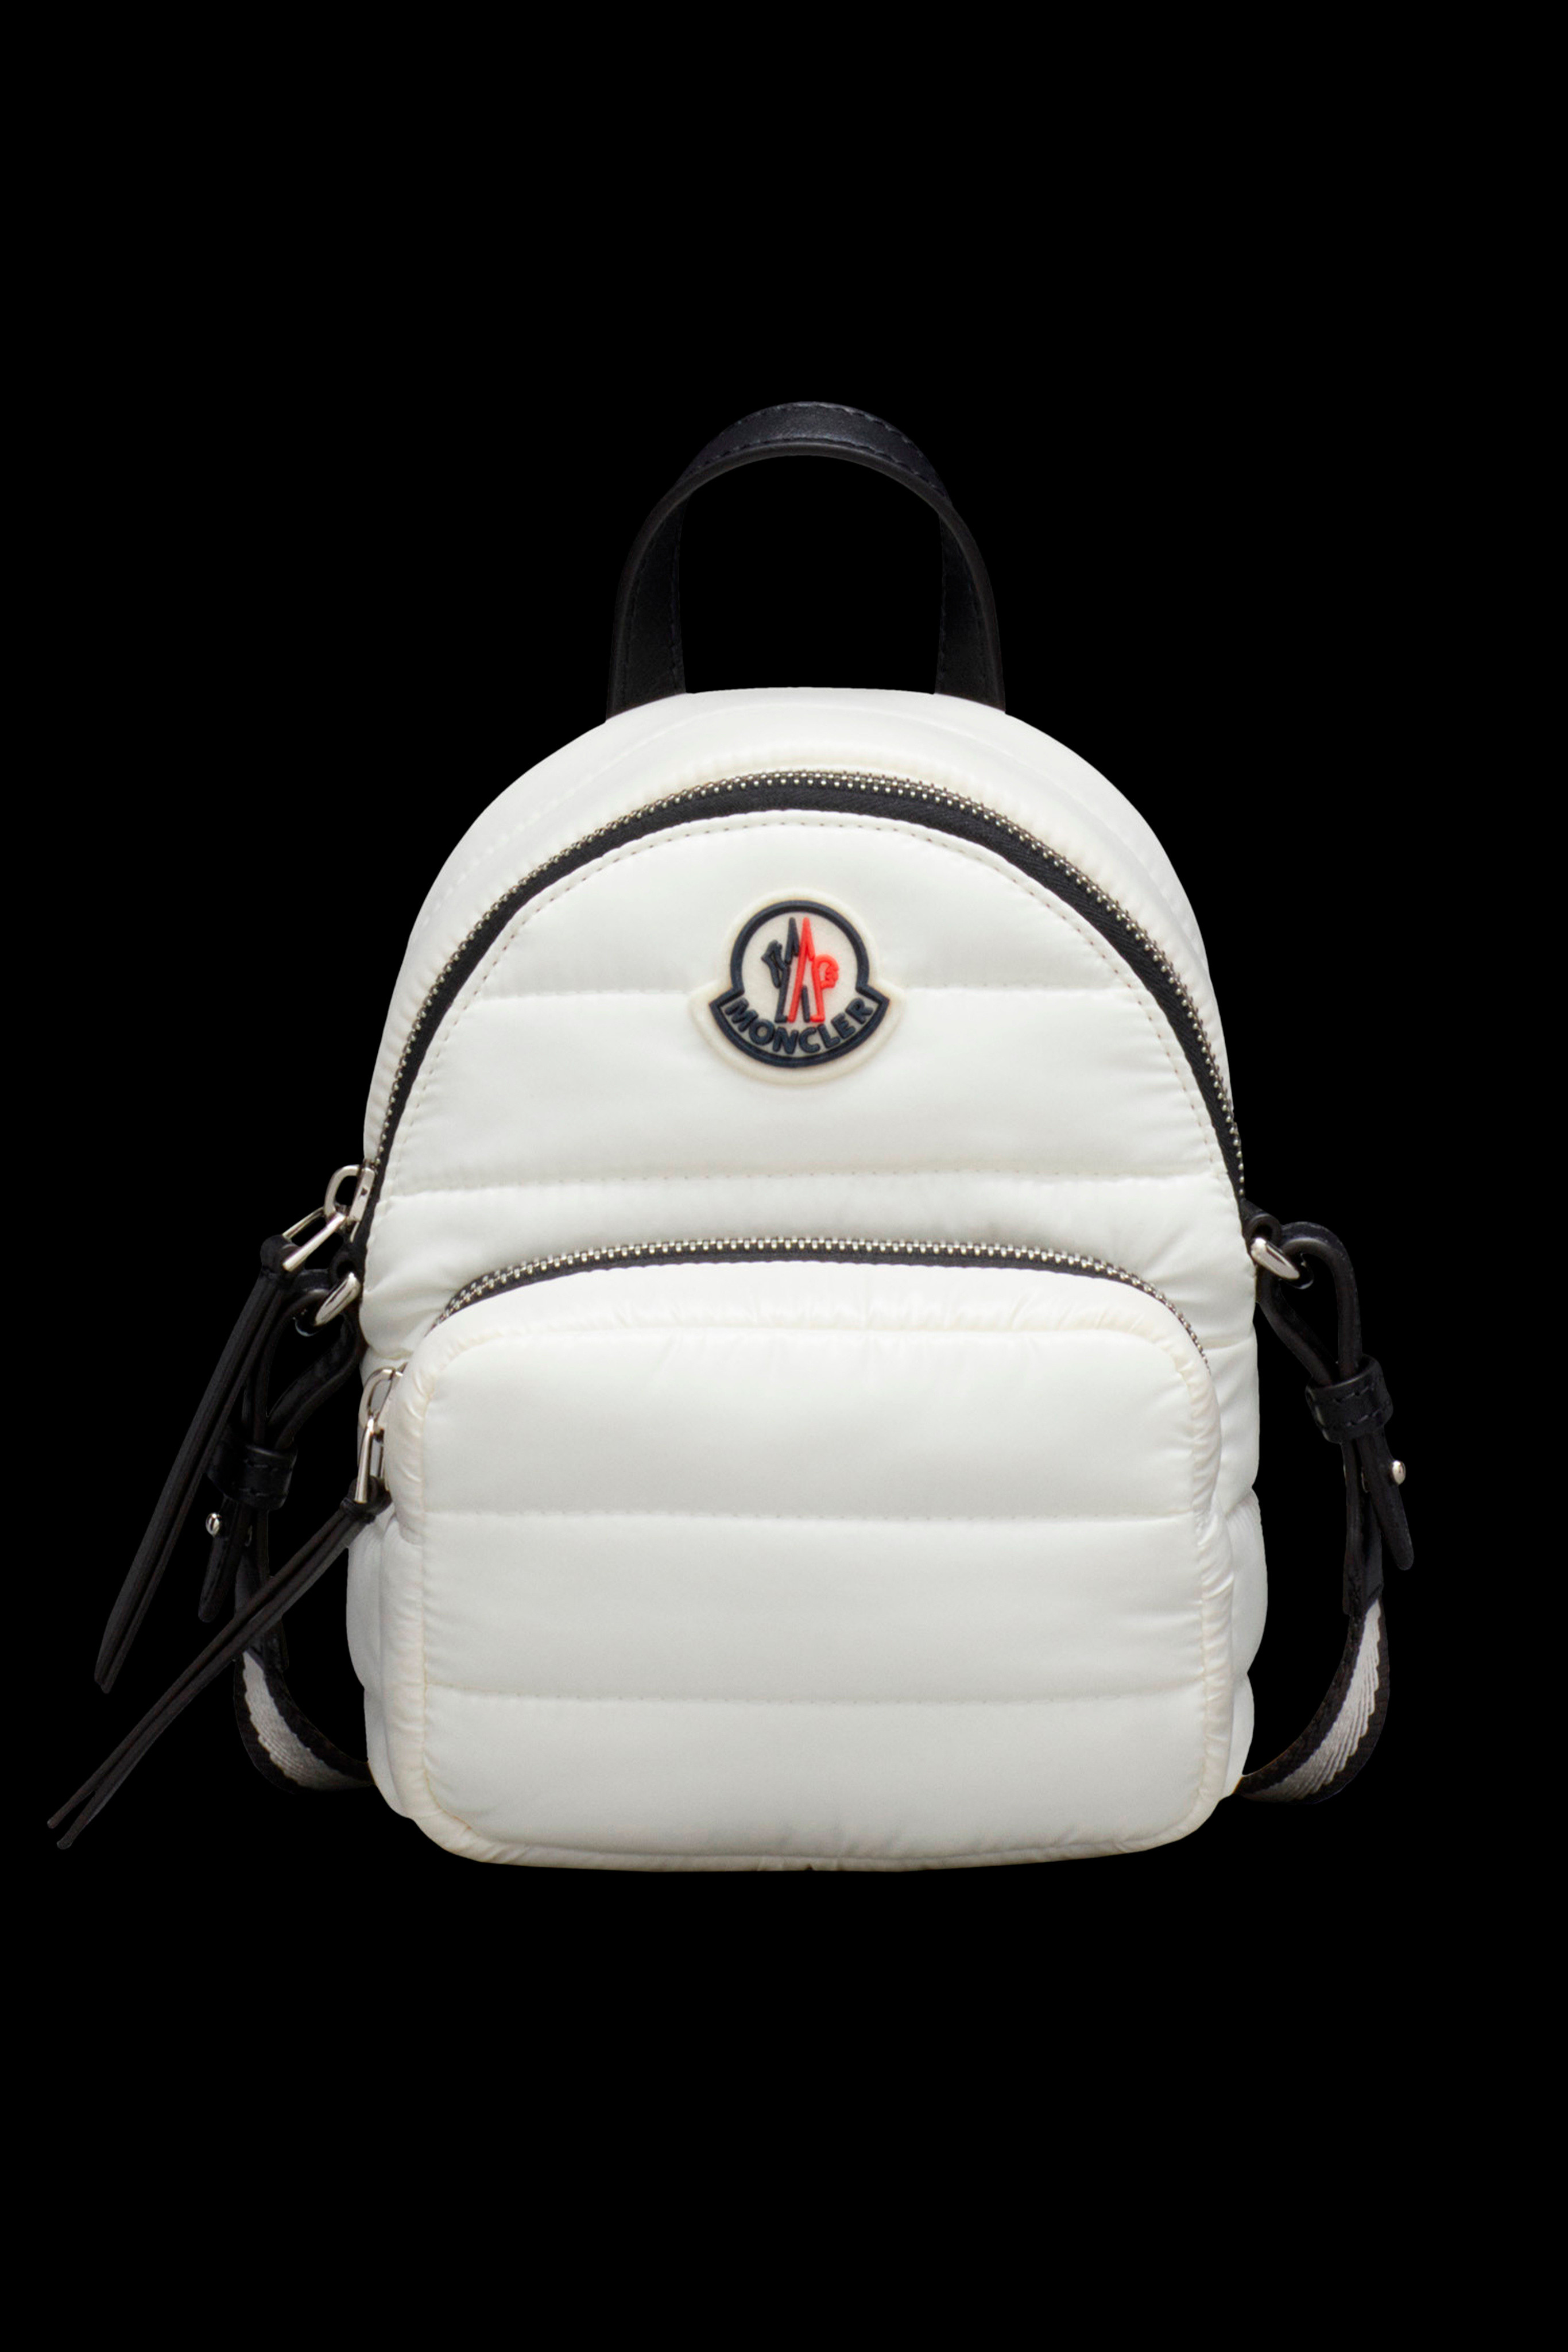 Backpacks, Handbags & Fanny Packs for Women | Moncler US